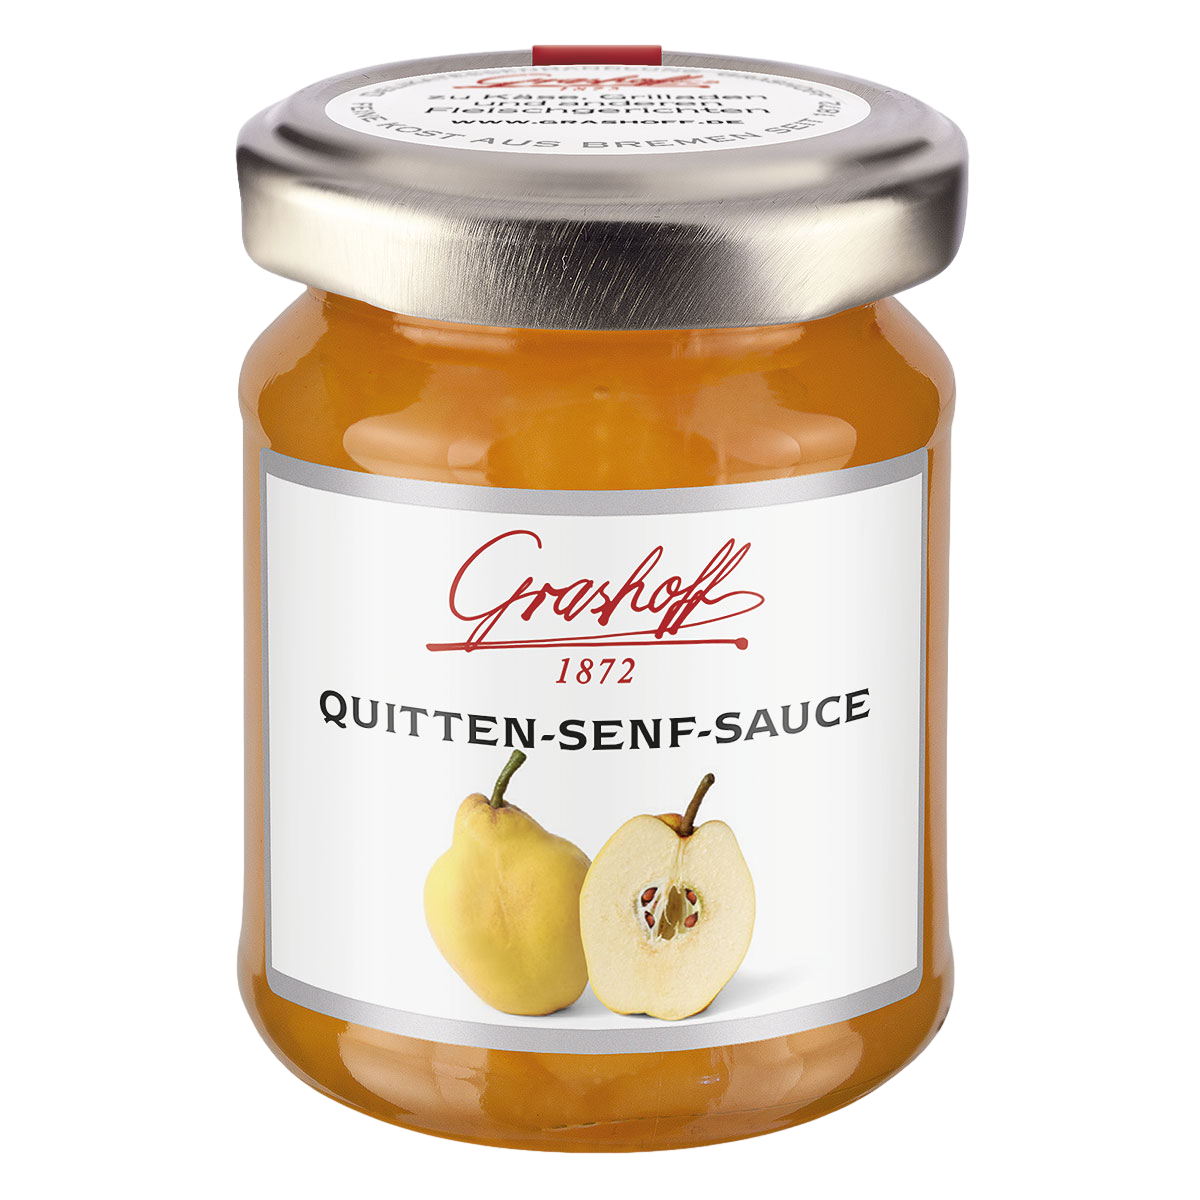 Quitten-Sanf-Sauce